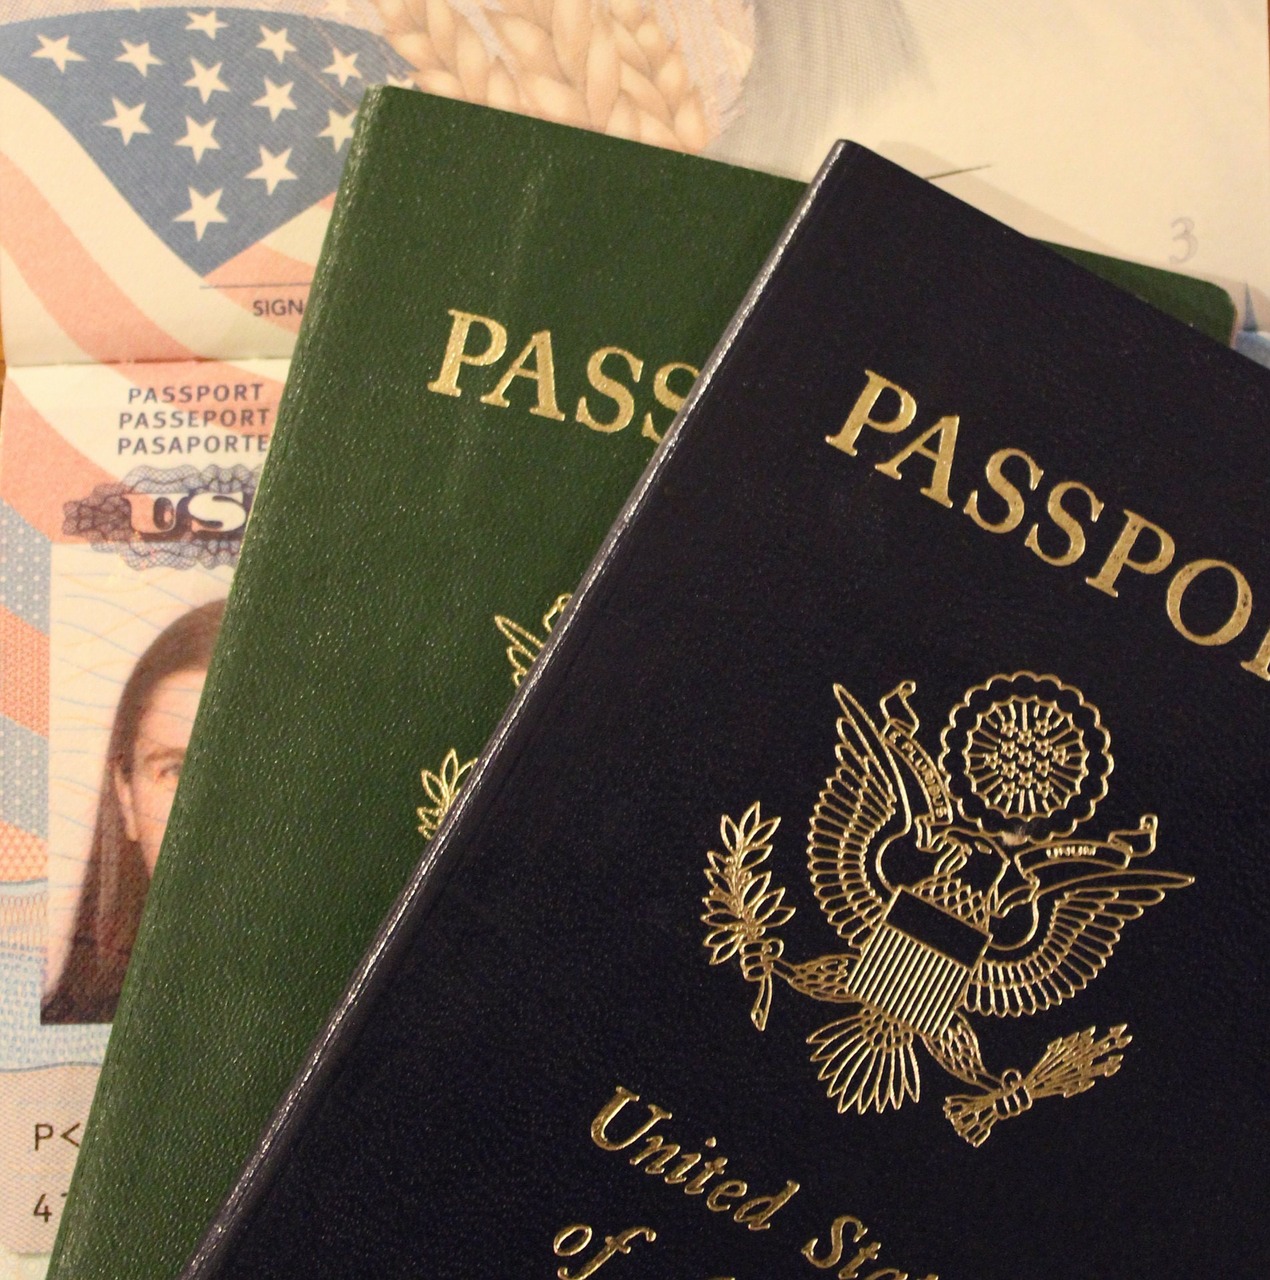 Imigração nos EUA: dicas para entrevista no aeroporto. | Dicas de inglês 